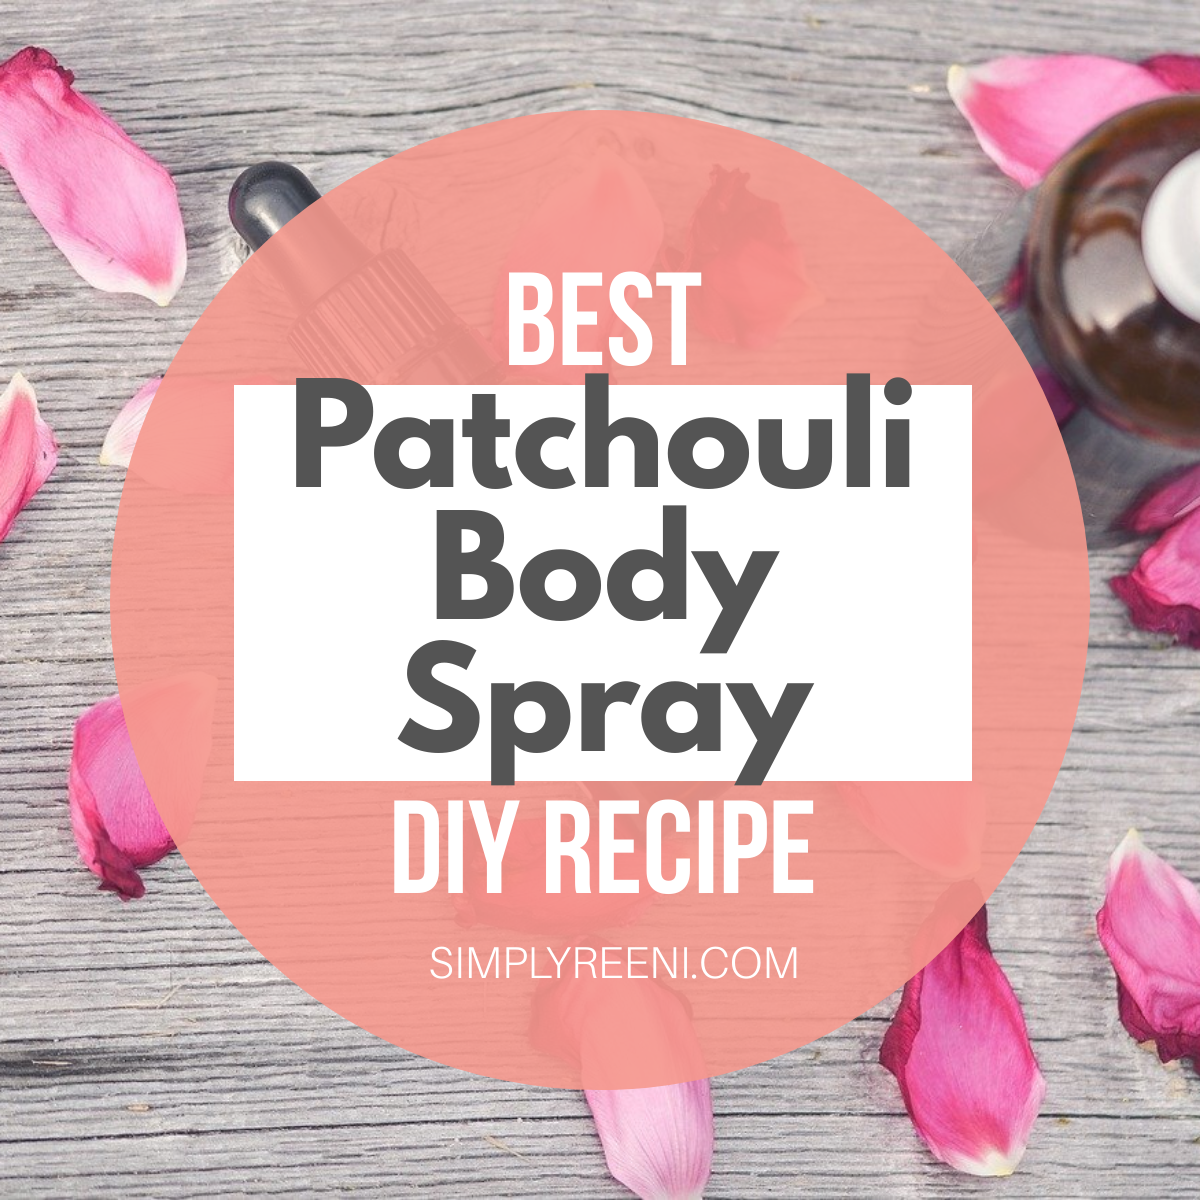 Best Patchouli Body Spray DIY Recipe